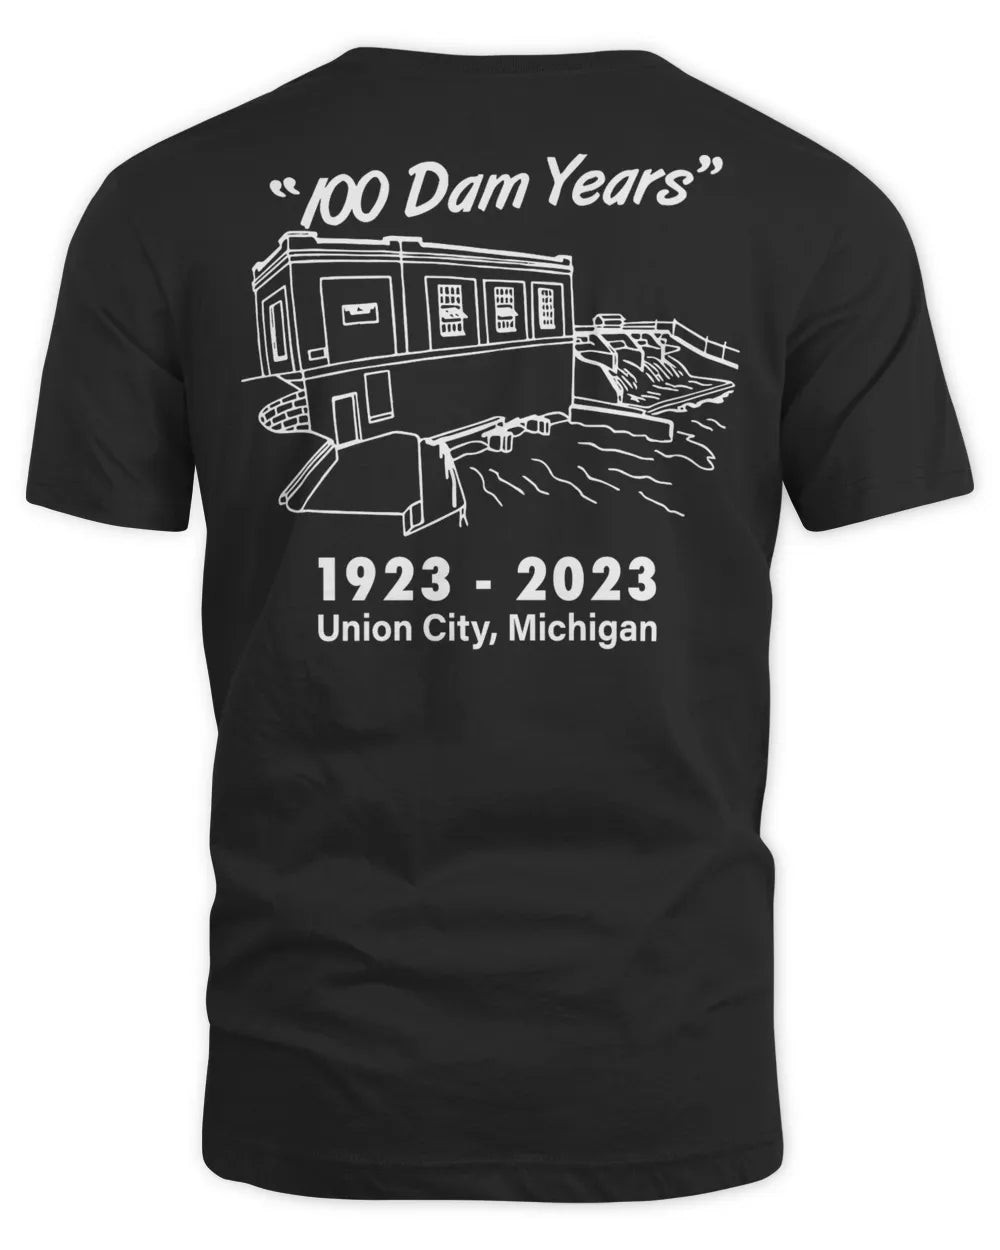 100 Dam Years Riley Dam Shirt